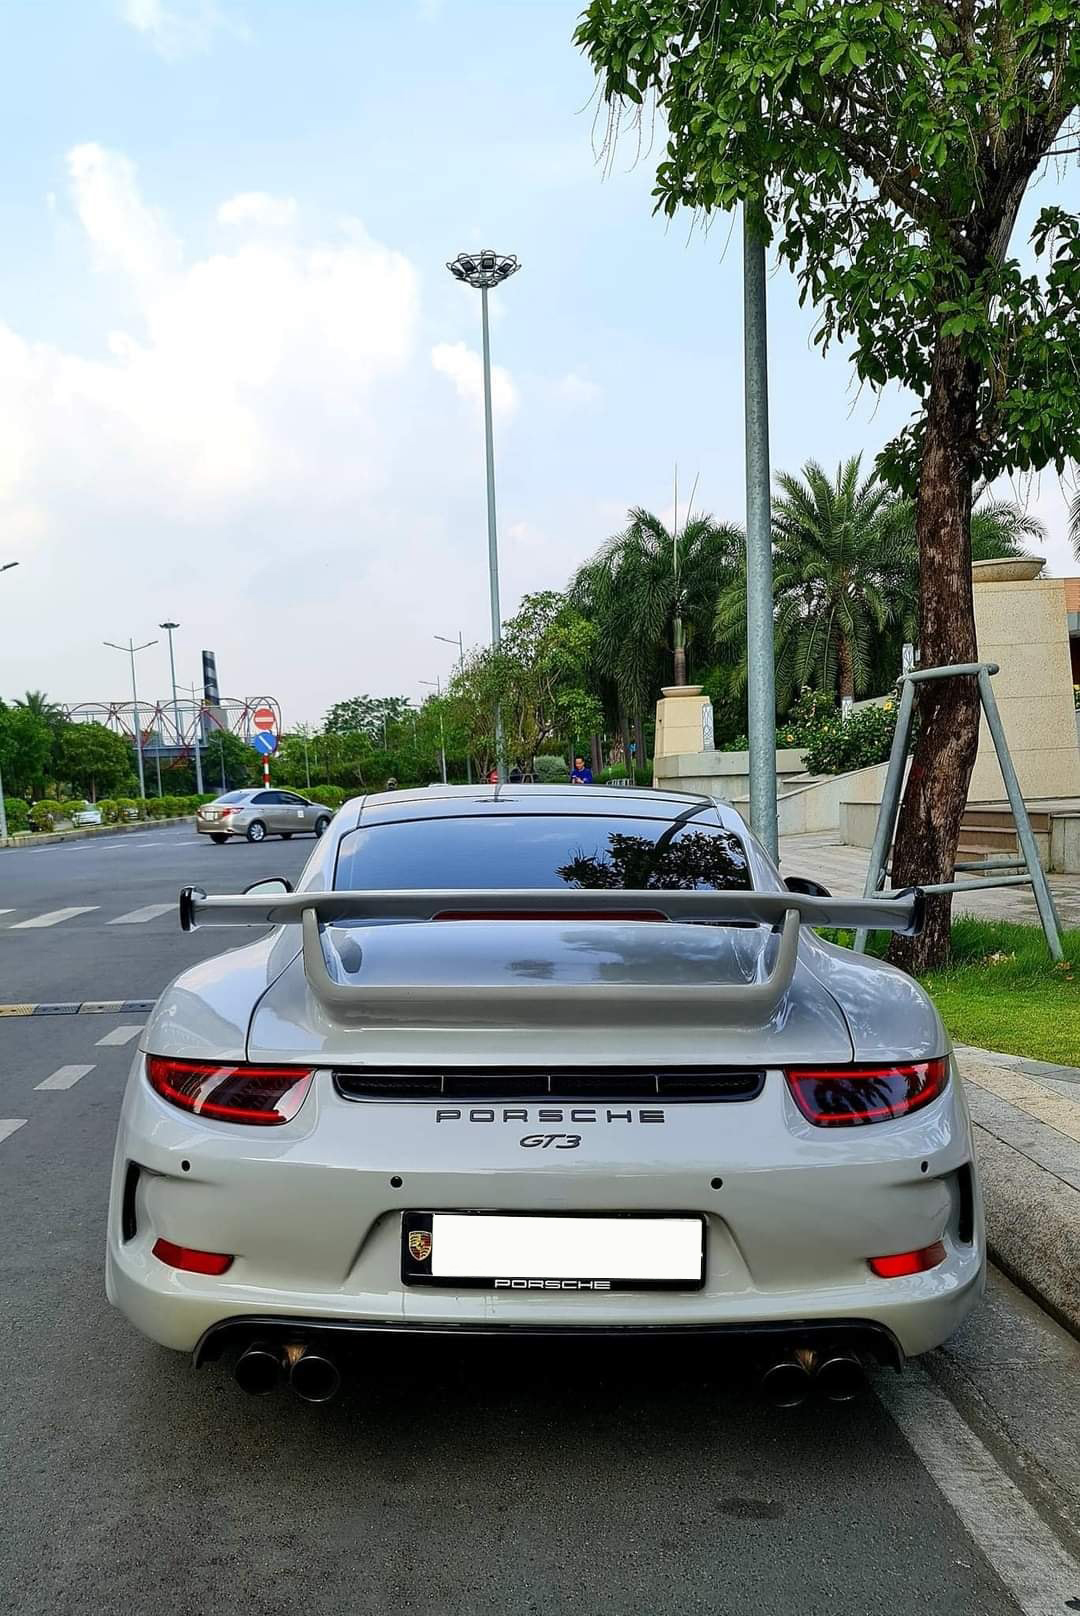 Huyền thoại Porsche 911 được rao bán 4 tỷ đồng dù chạy chỉ chạy 5.000km mỗi năm - Ảnh 4.